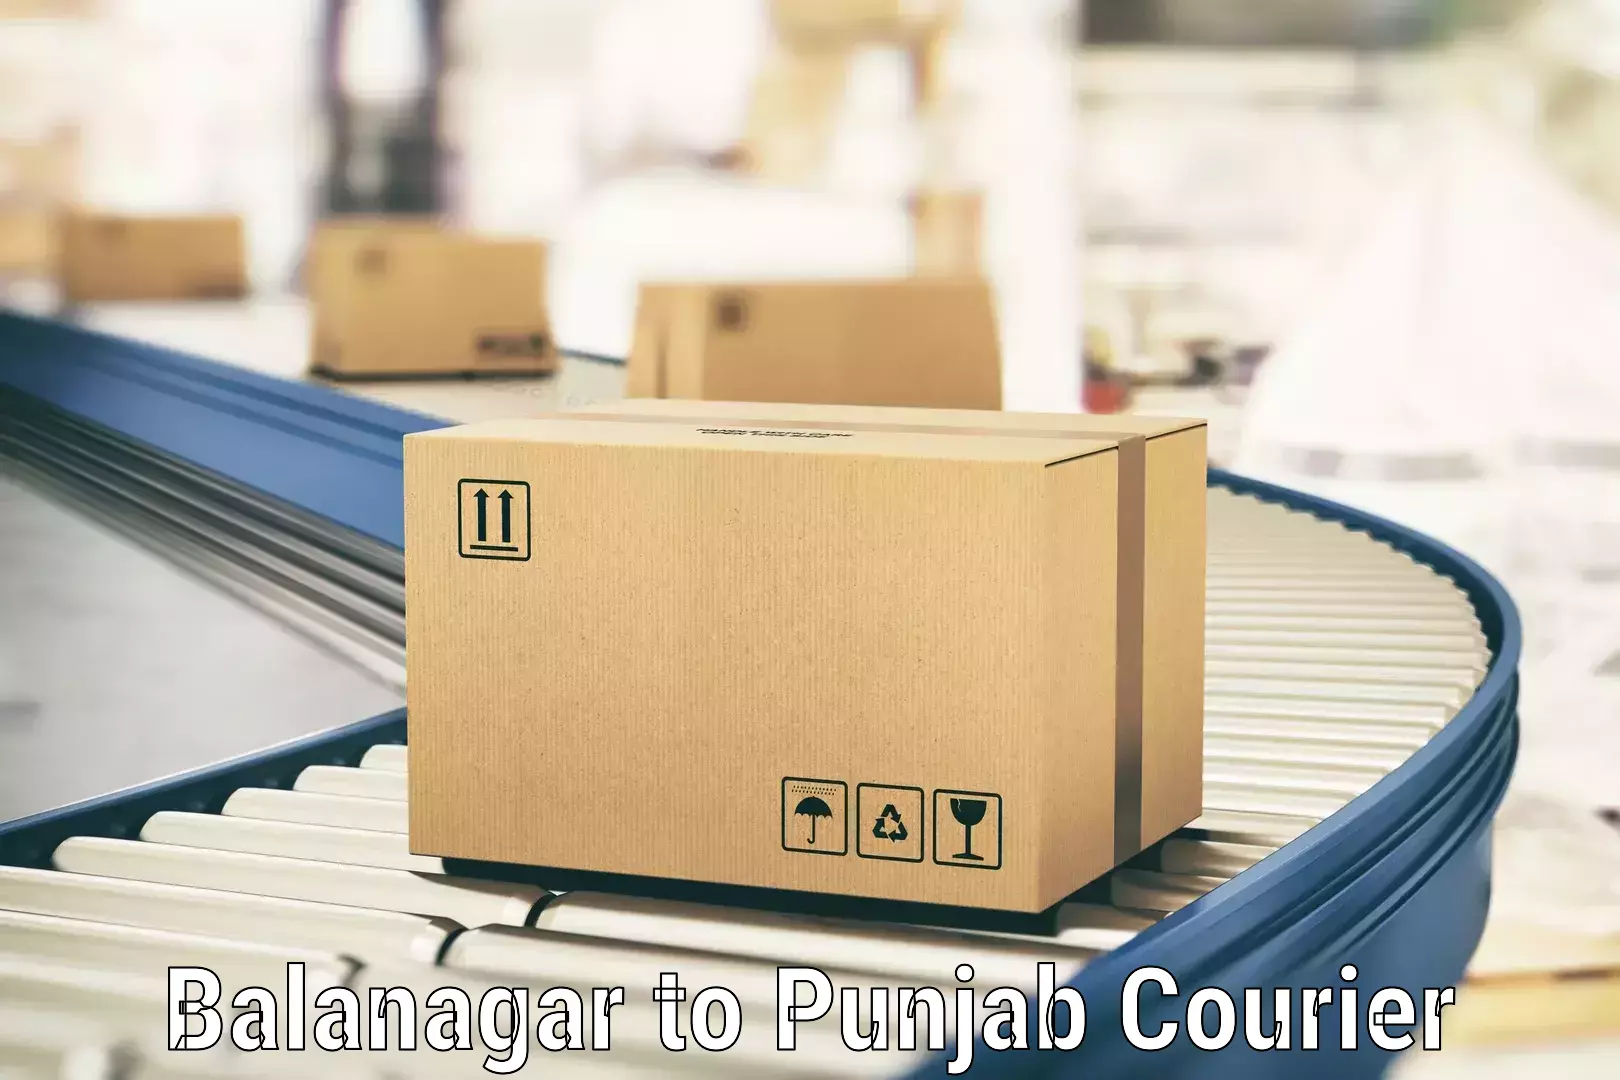 Cargo delivery service in Balanagar to Gurdaspur